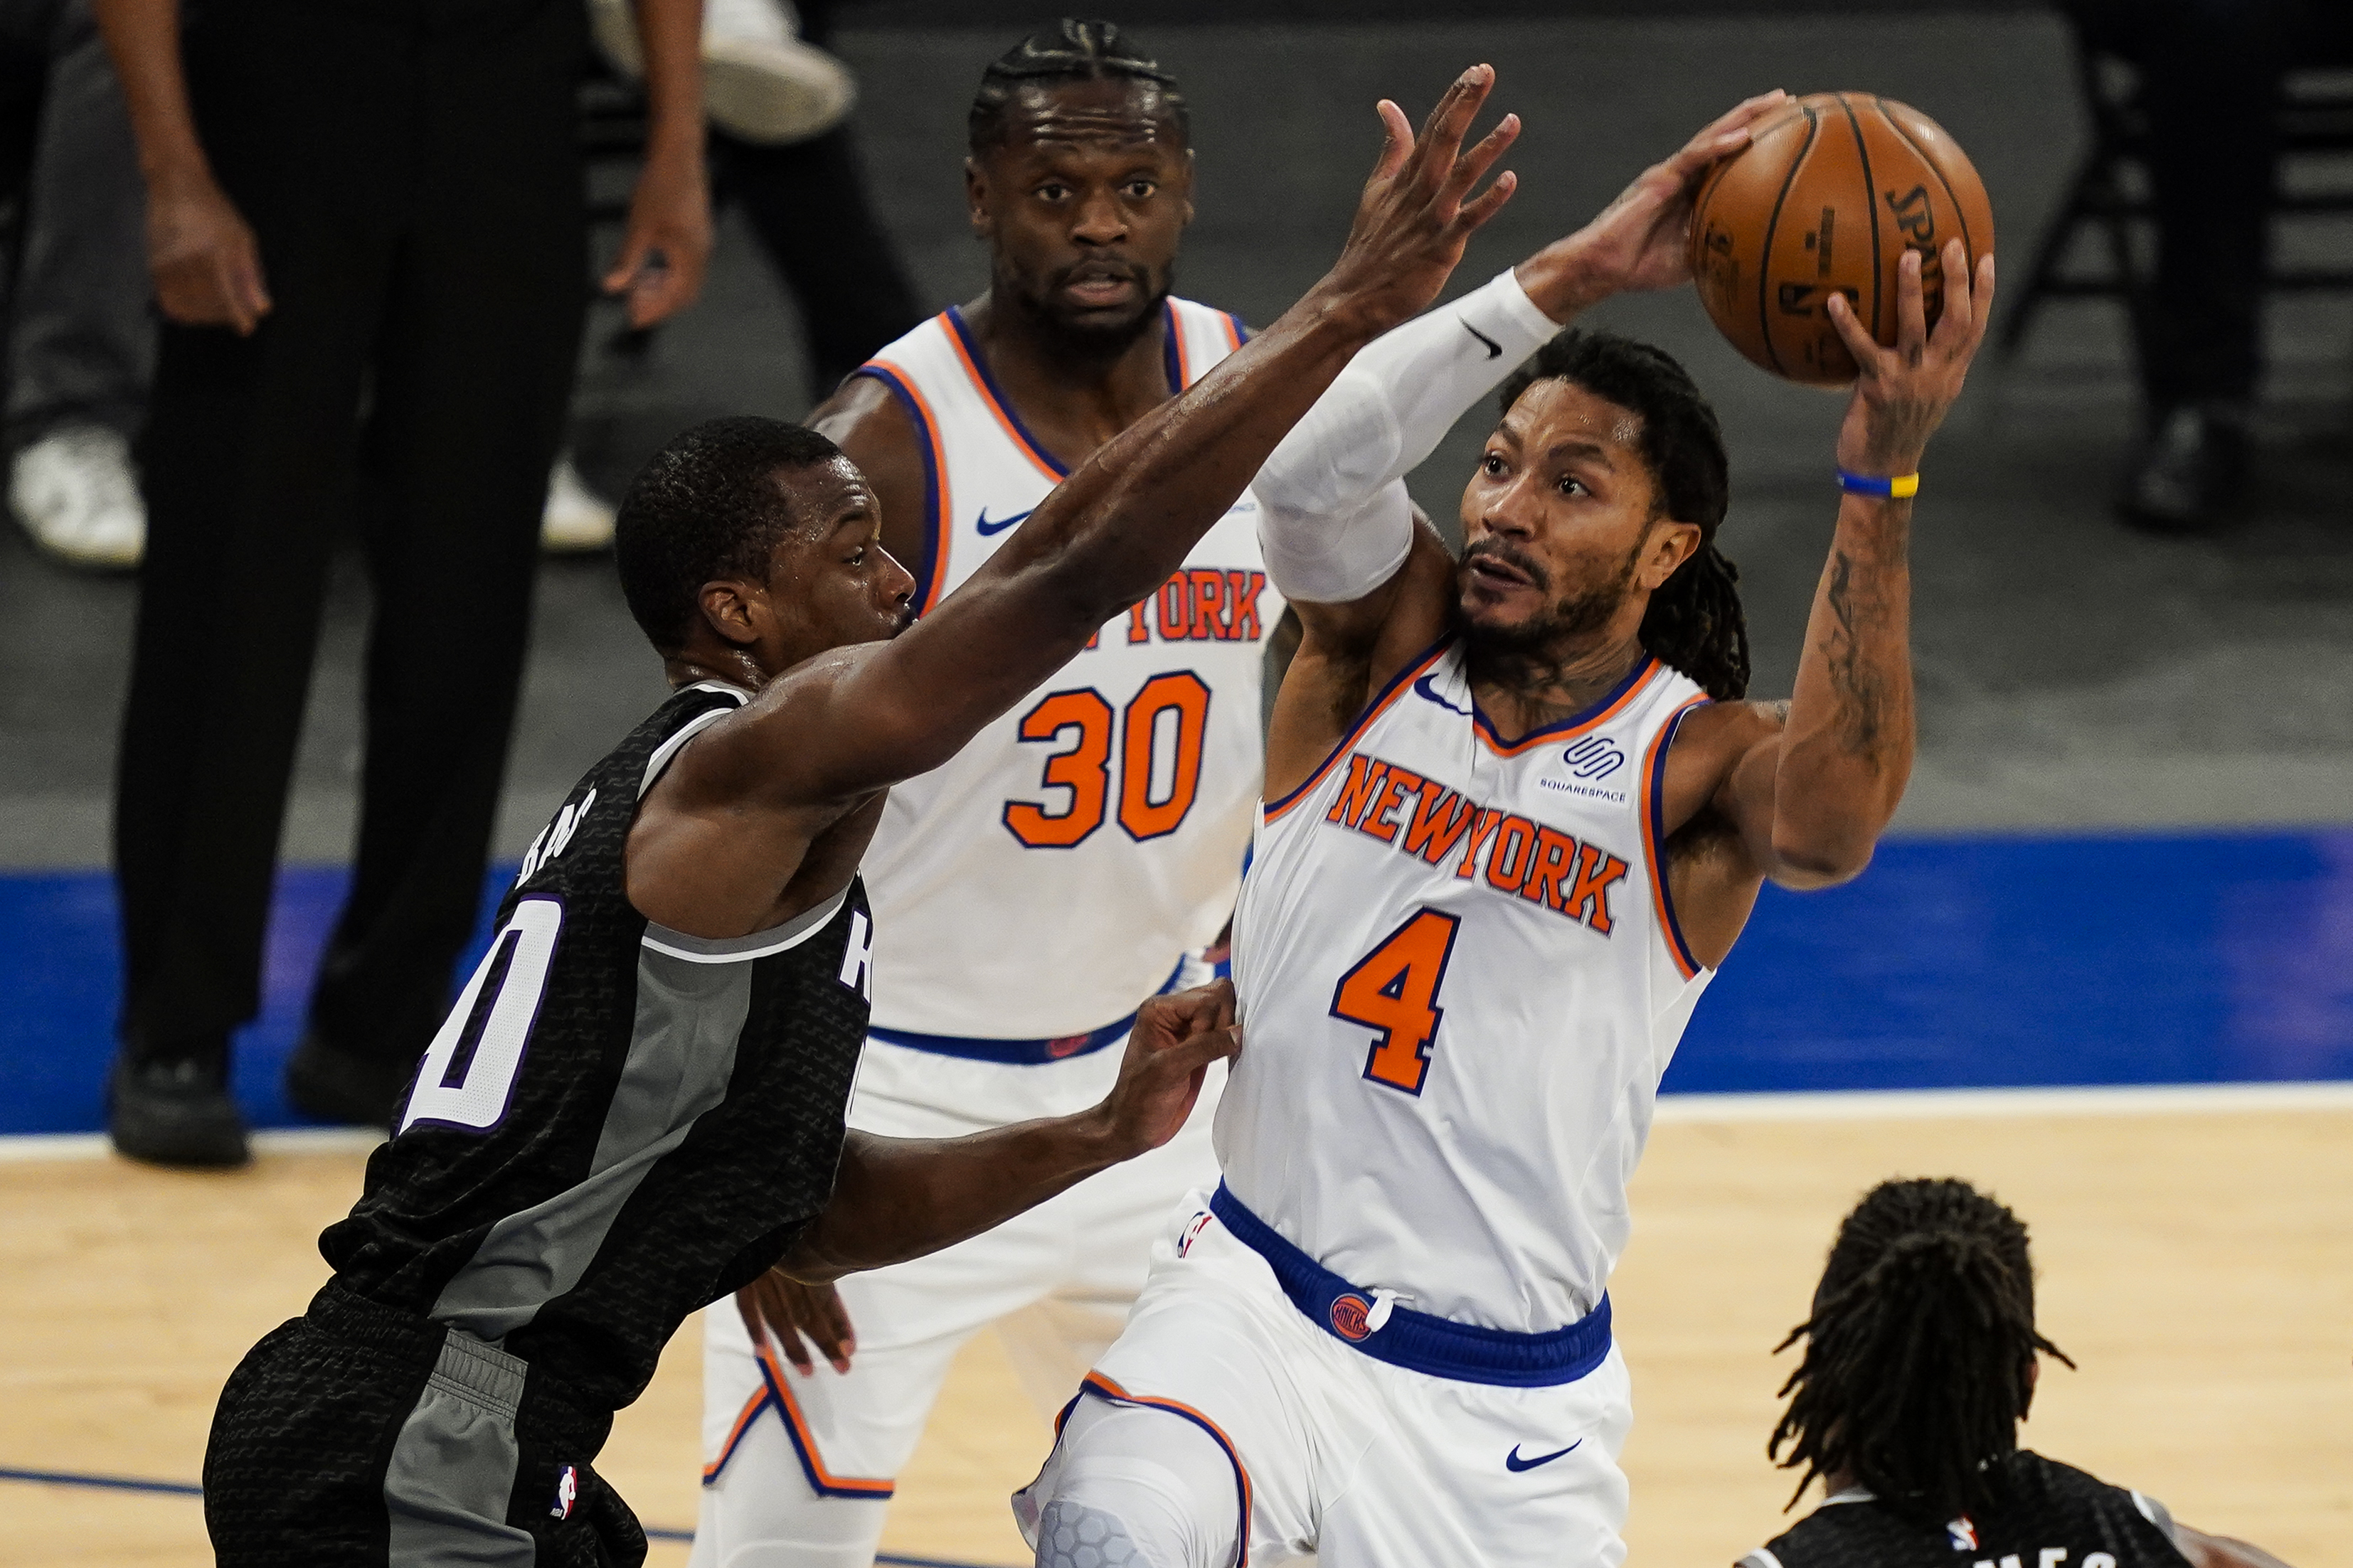 Ingressos para o New York Knicks Basketball no Madison Square Garden de Nova  York 2023 - Cidade de Nova York